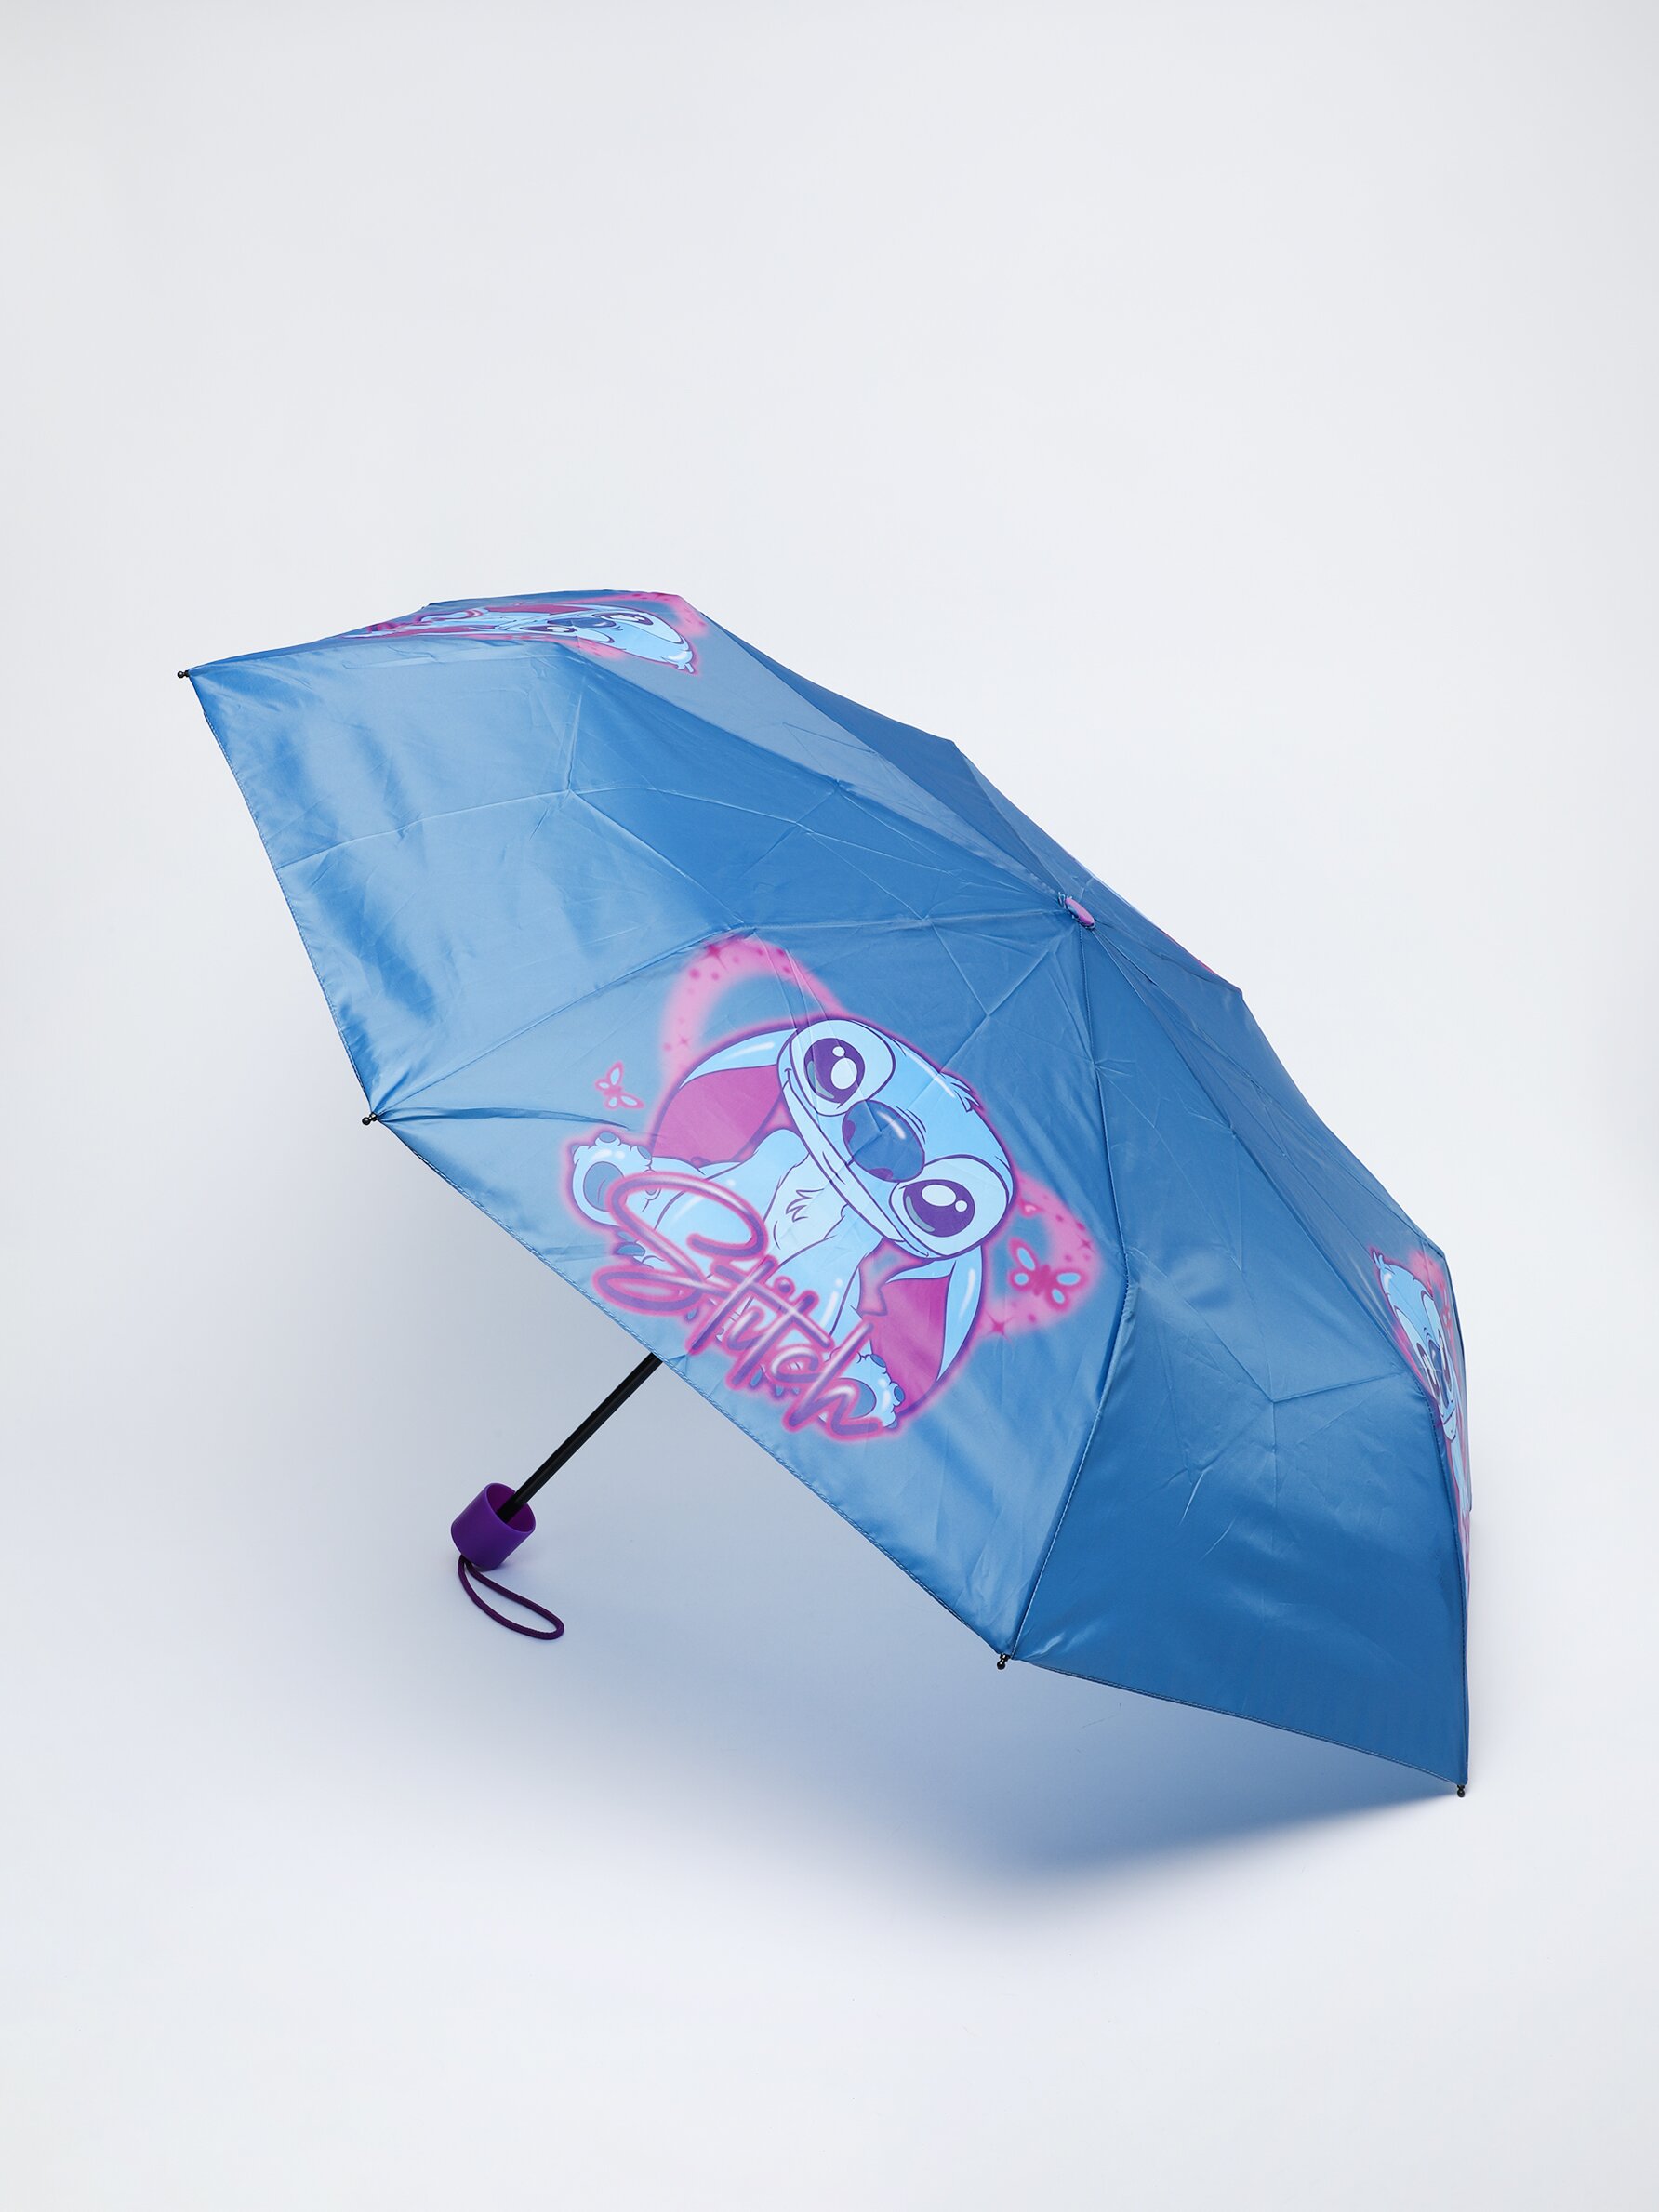 Paraguas infantil Stitch, Disney Store